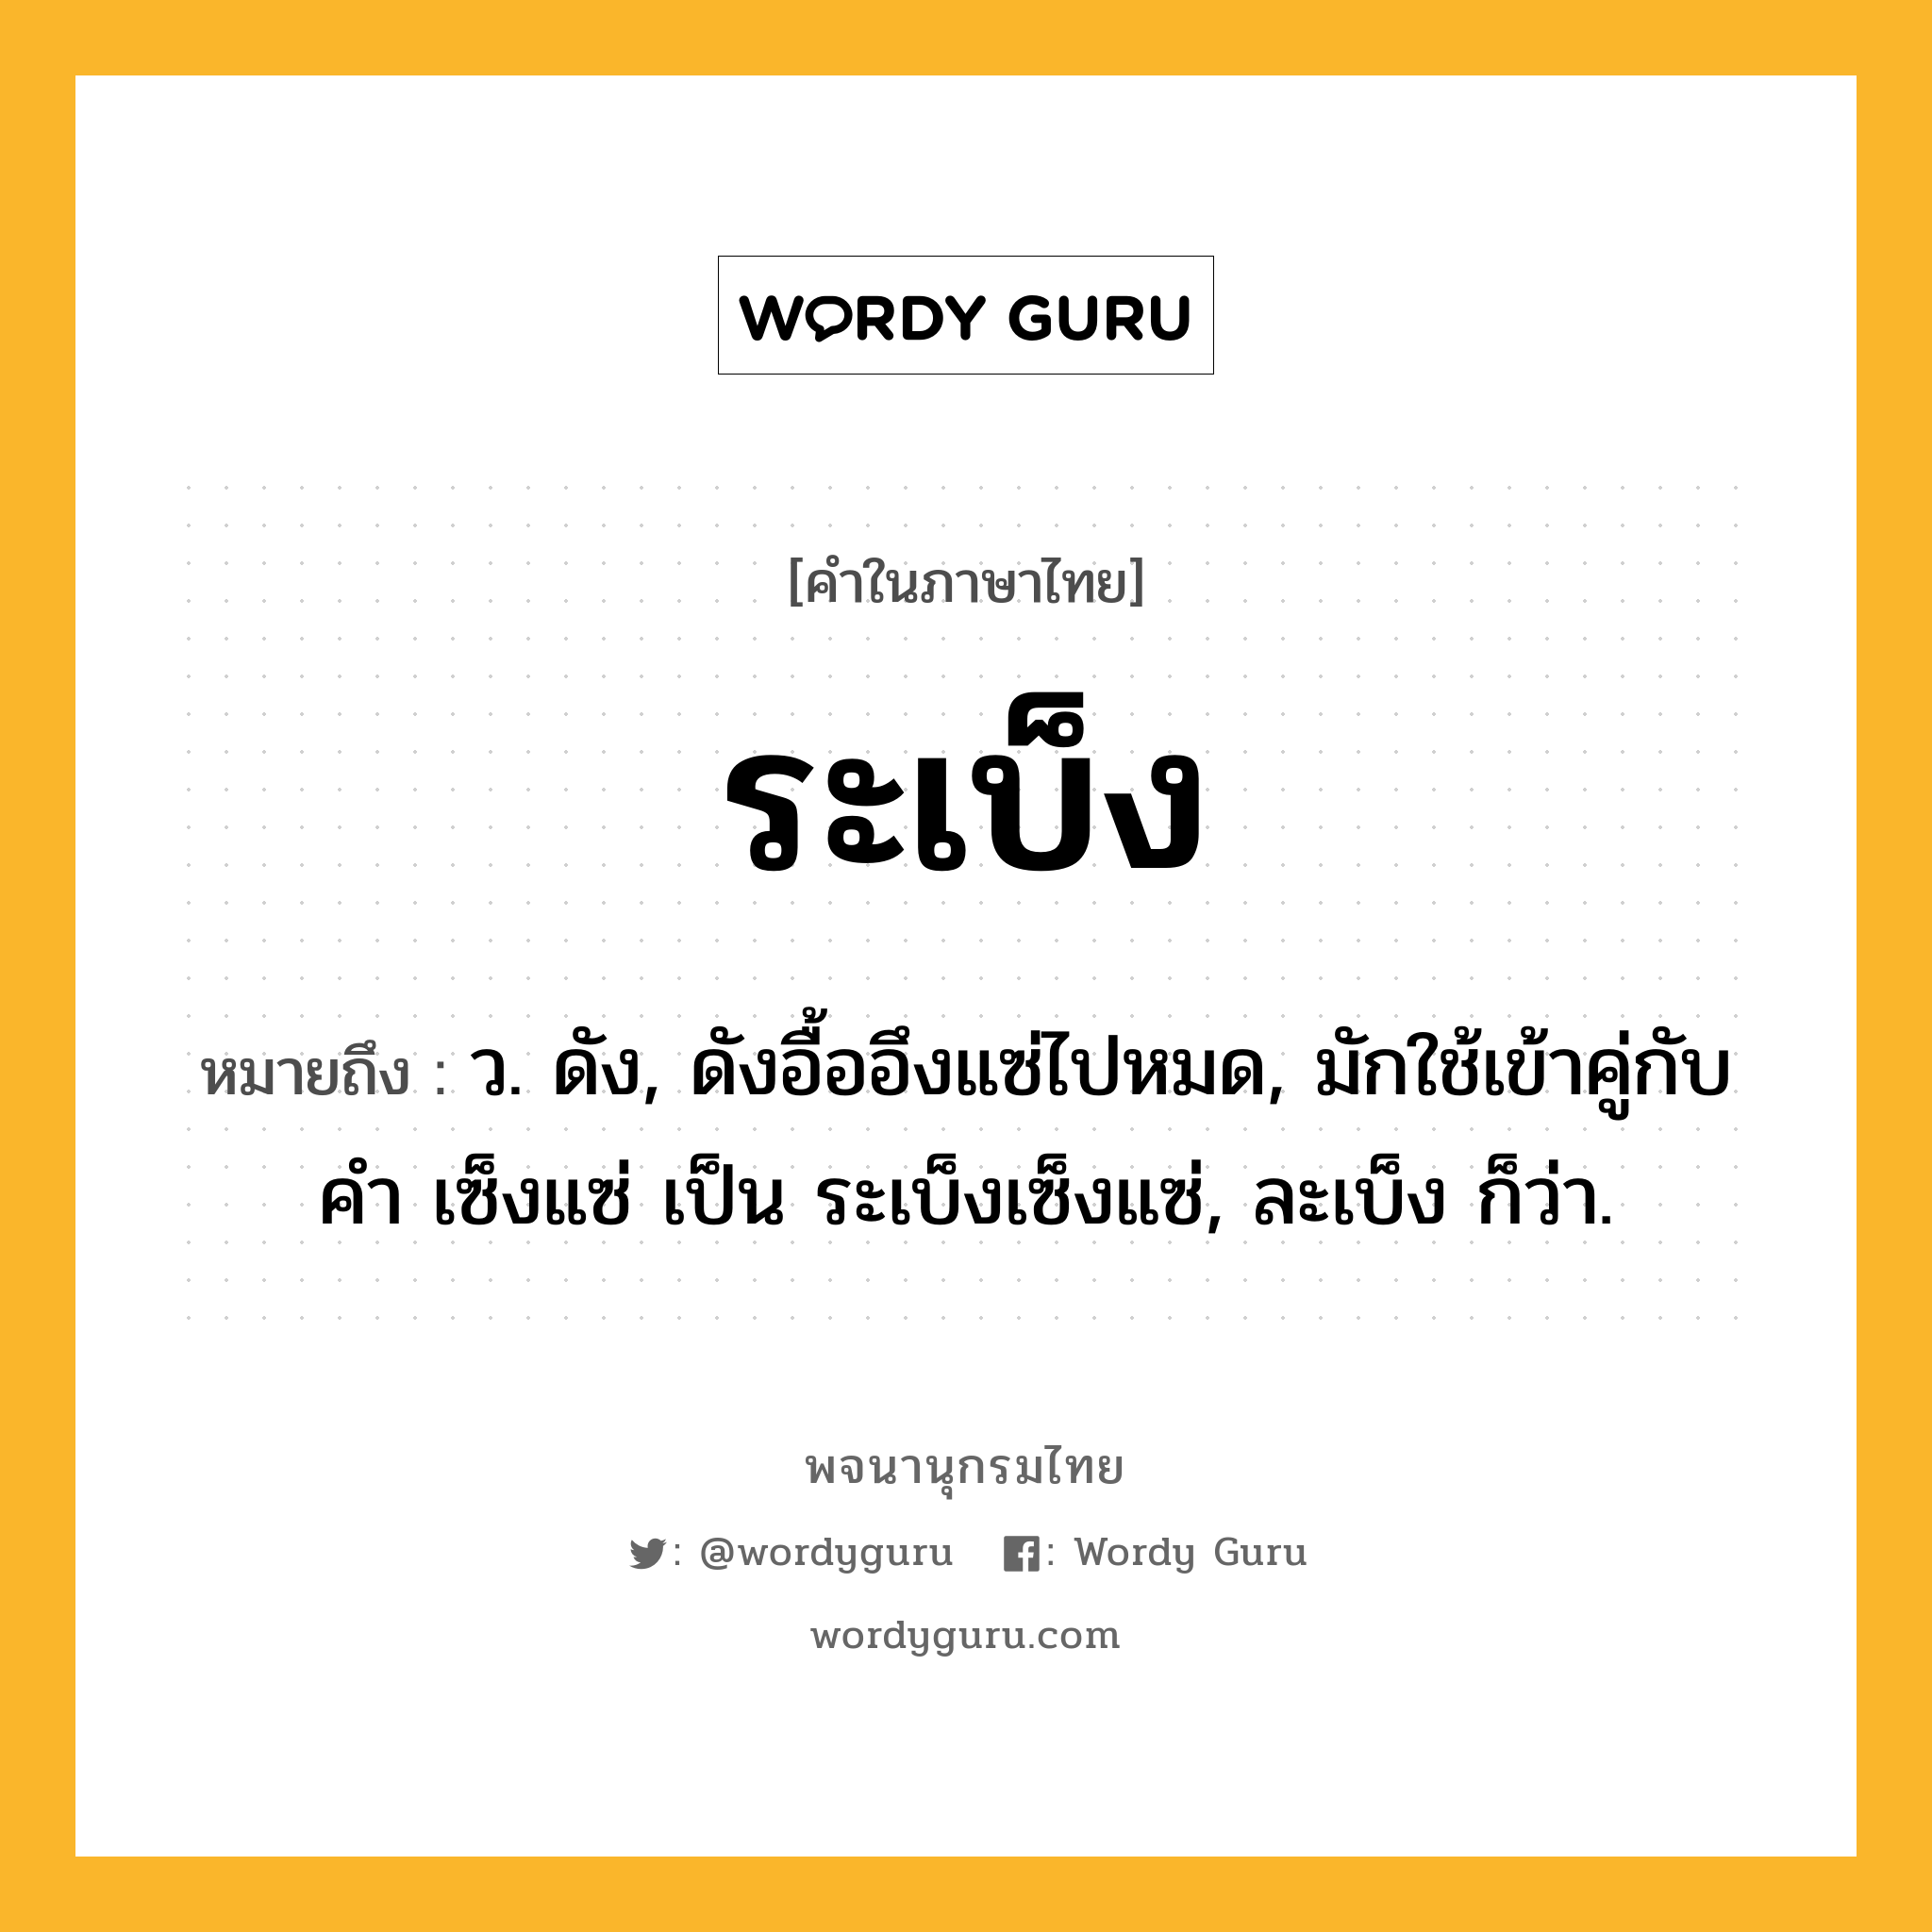 ระเบ็ง หมายถึงอะไร?, คำในภาษาไทย ระเบ็ง หมายถึง ว. ดัง, ดังอื้ออึงแซ่ไปหมด, มักใช้เข้าคู่กับคํา เซ็งแซ่ เป็น ระเบ็งเซ็งแซ่, ละเบ็ง ก็ว่า.